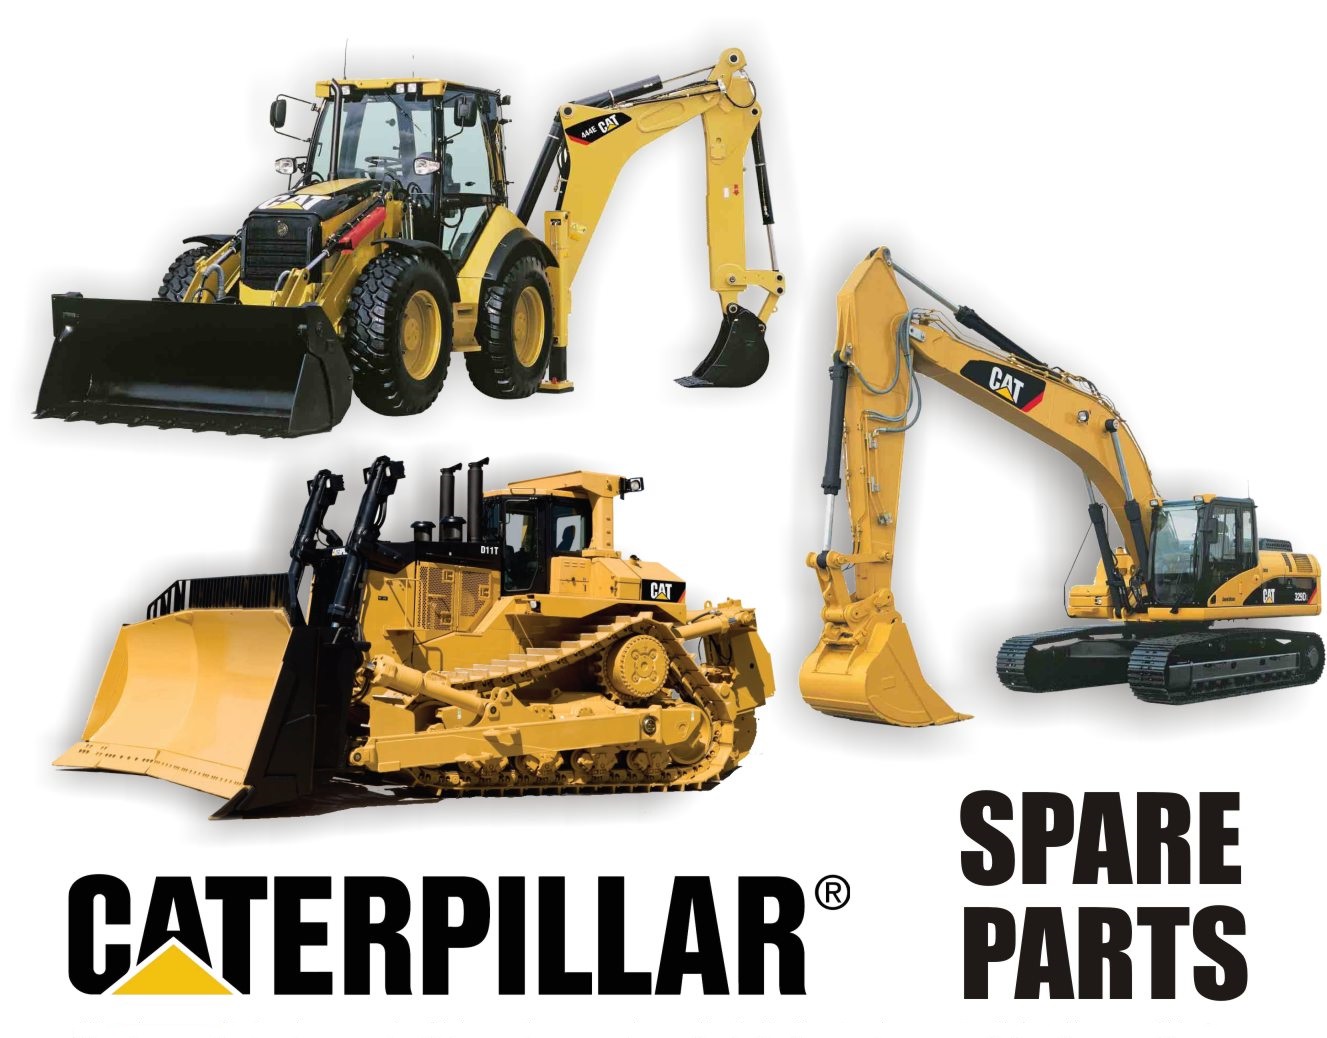  Genuine Caterpillar spare parts Manufactures